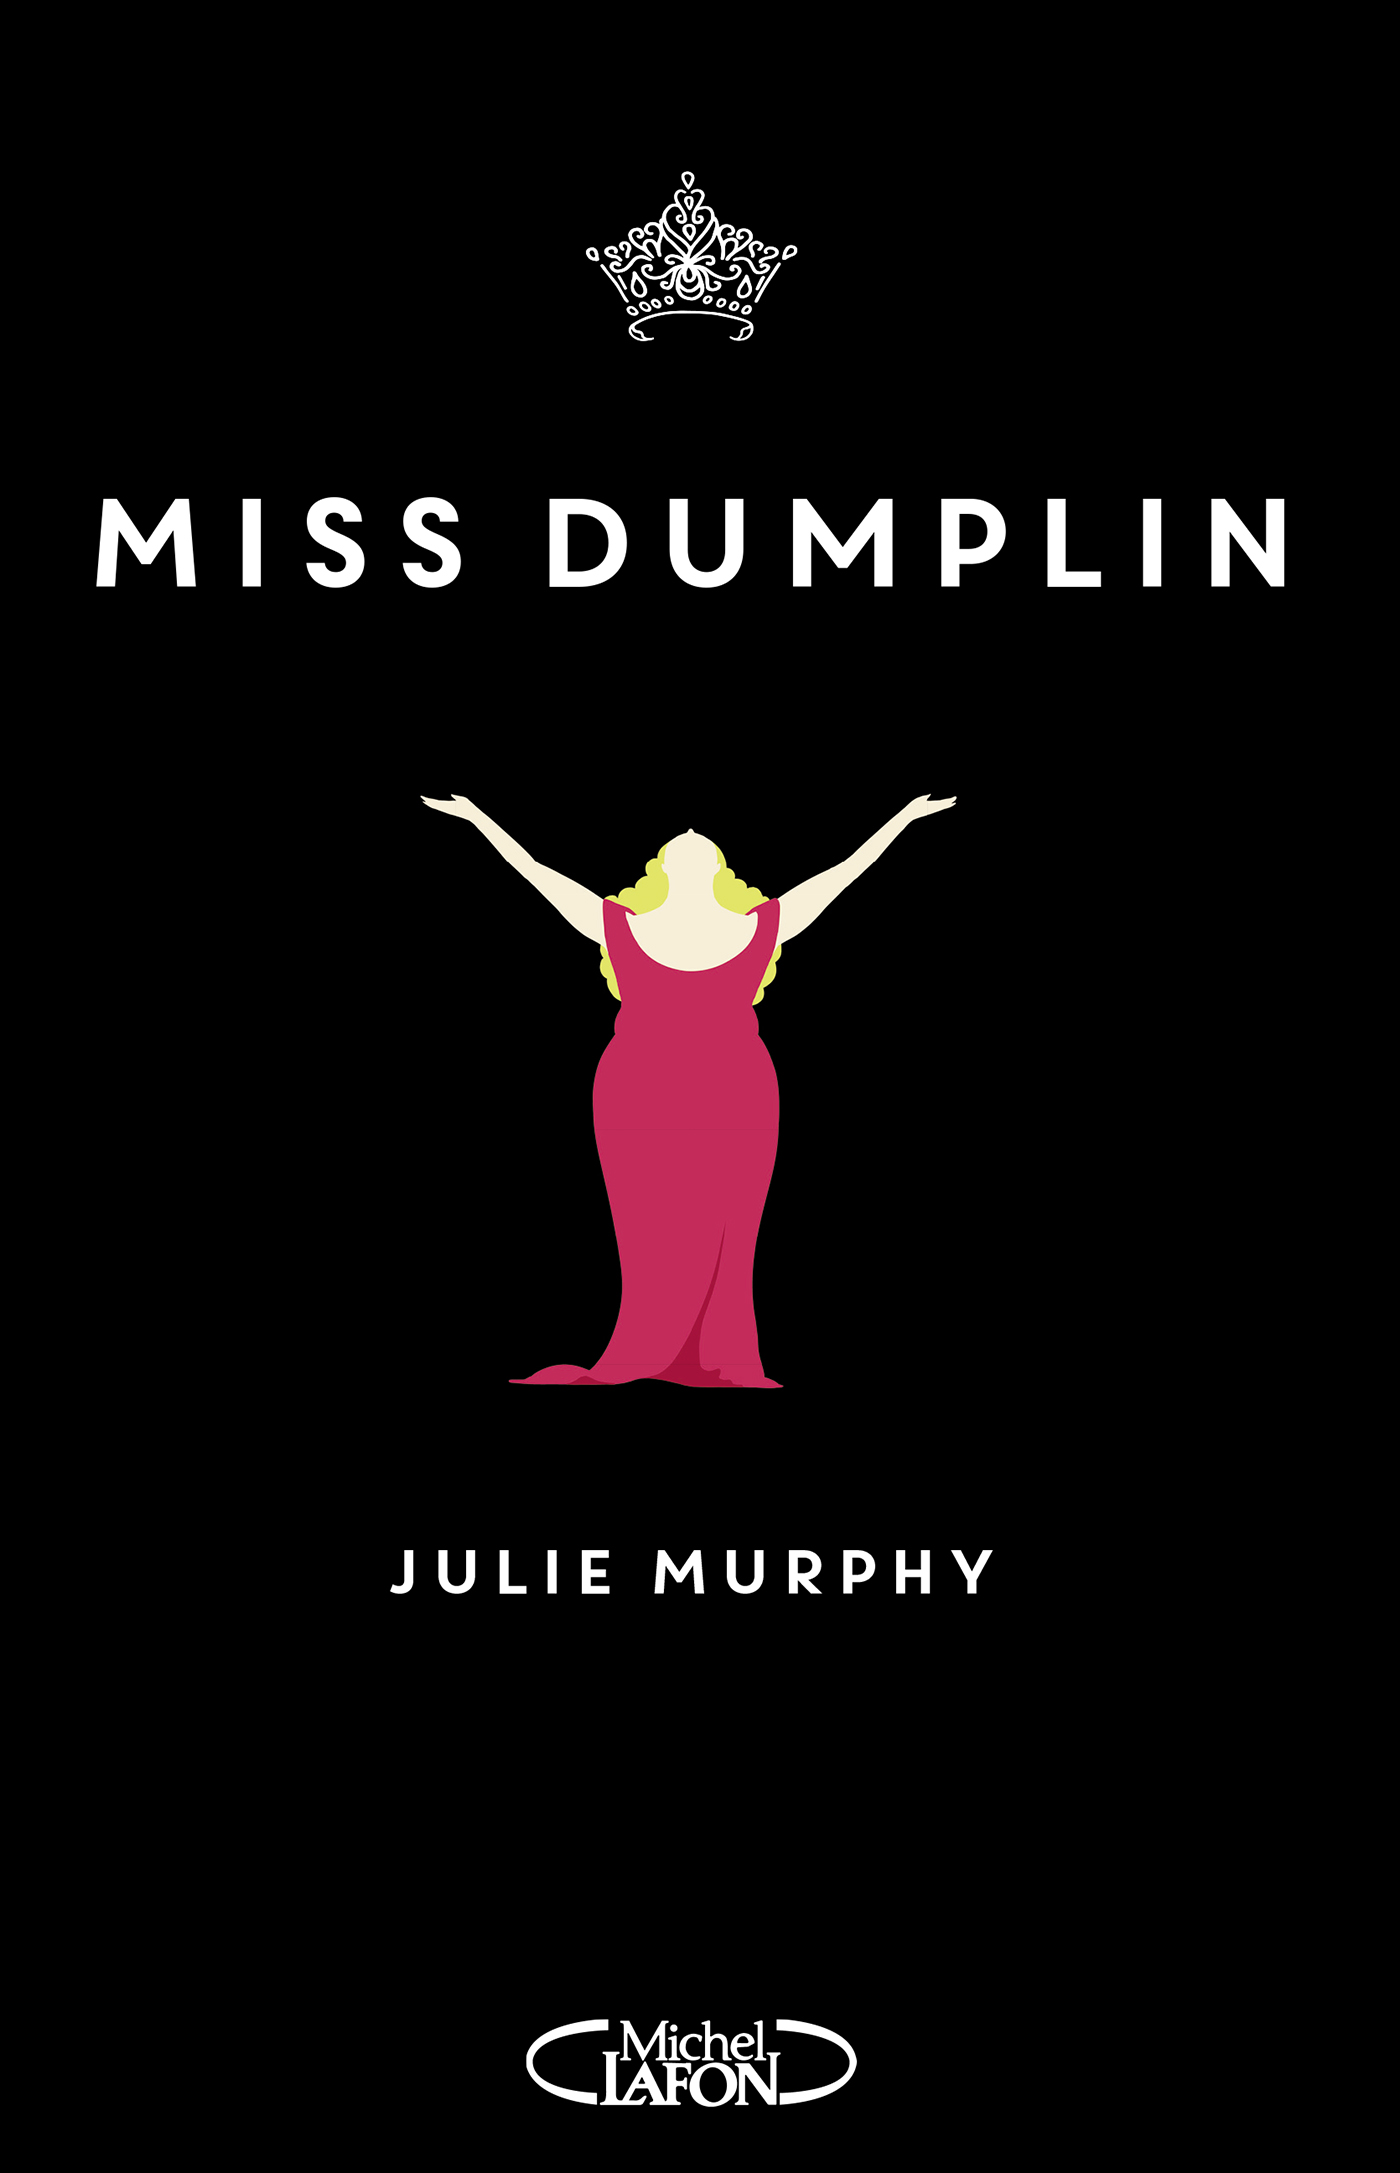 Miss Dumplin